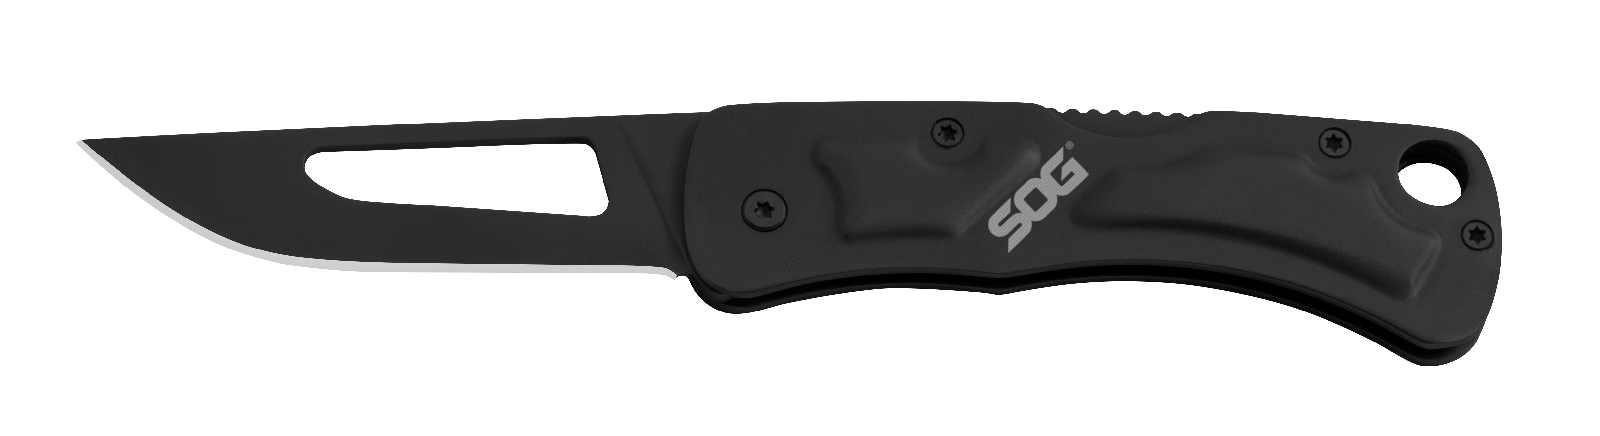 Складной нож Centi II, SOG CE1012, сталь 3Cr13MoV, рукоять нержавеющая сталь, чёрный, Еще..., Нож-брелок